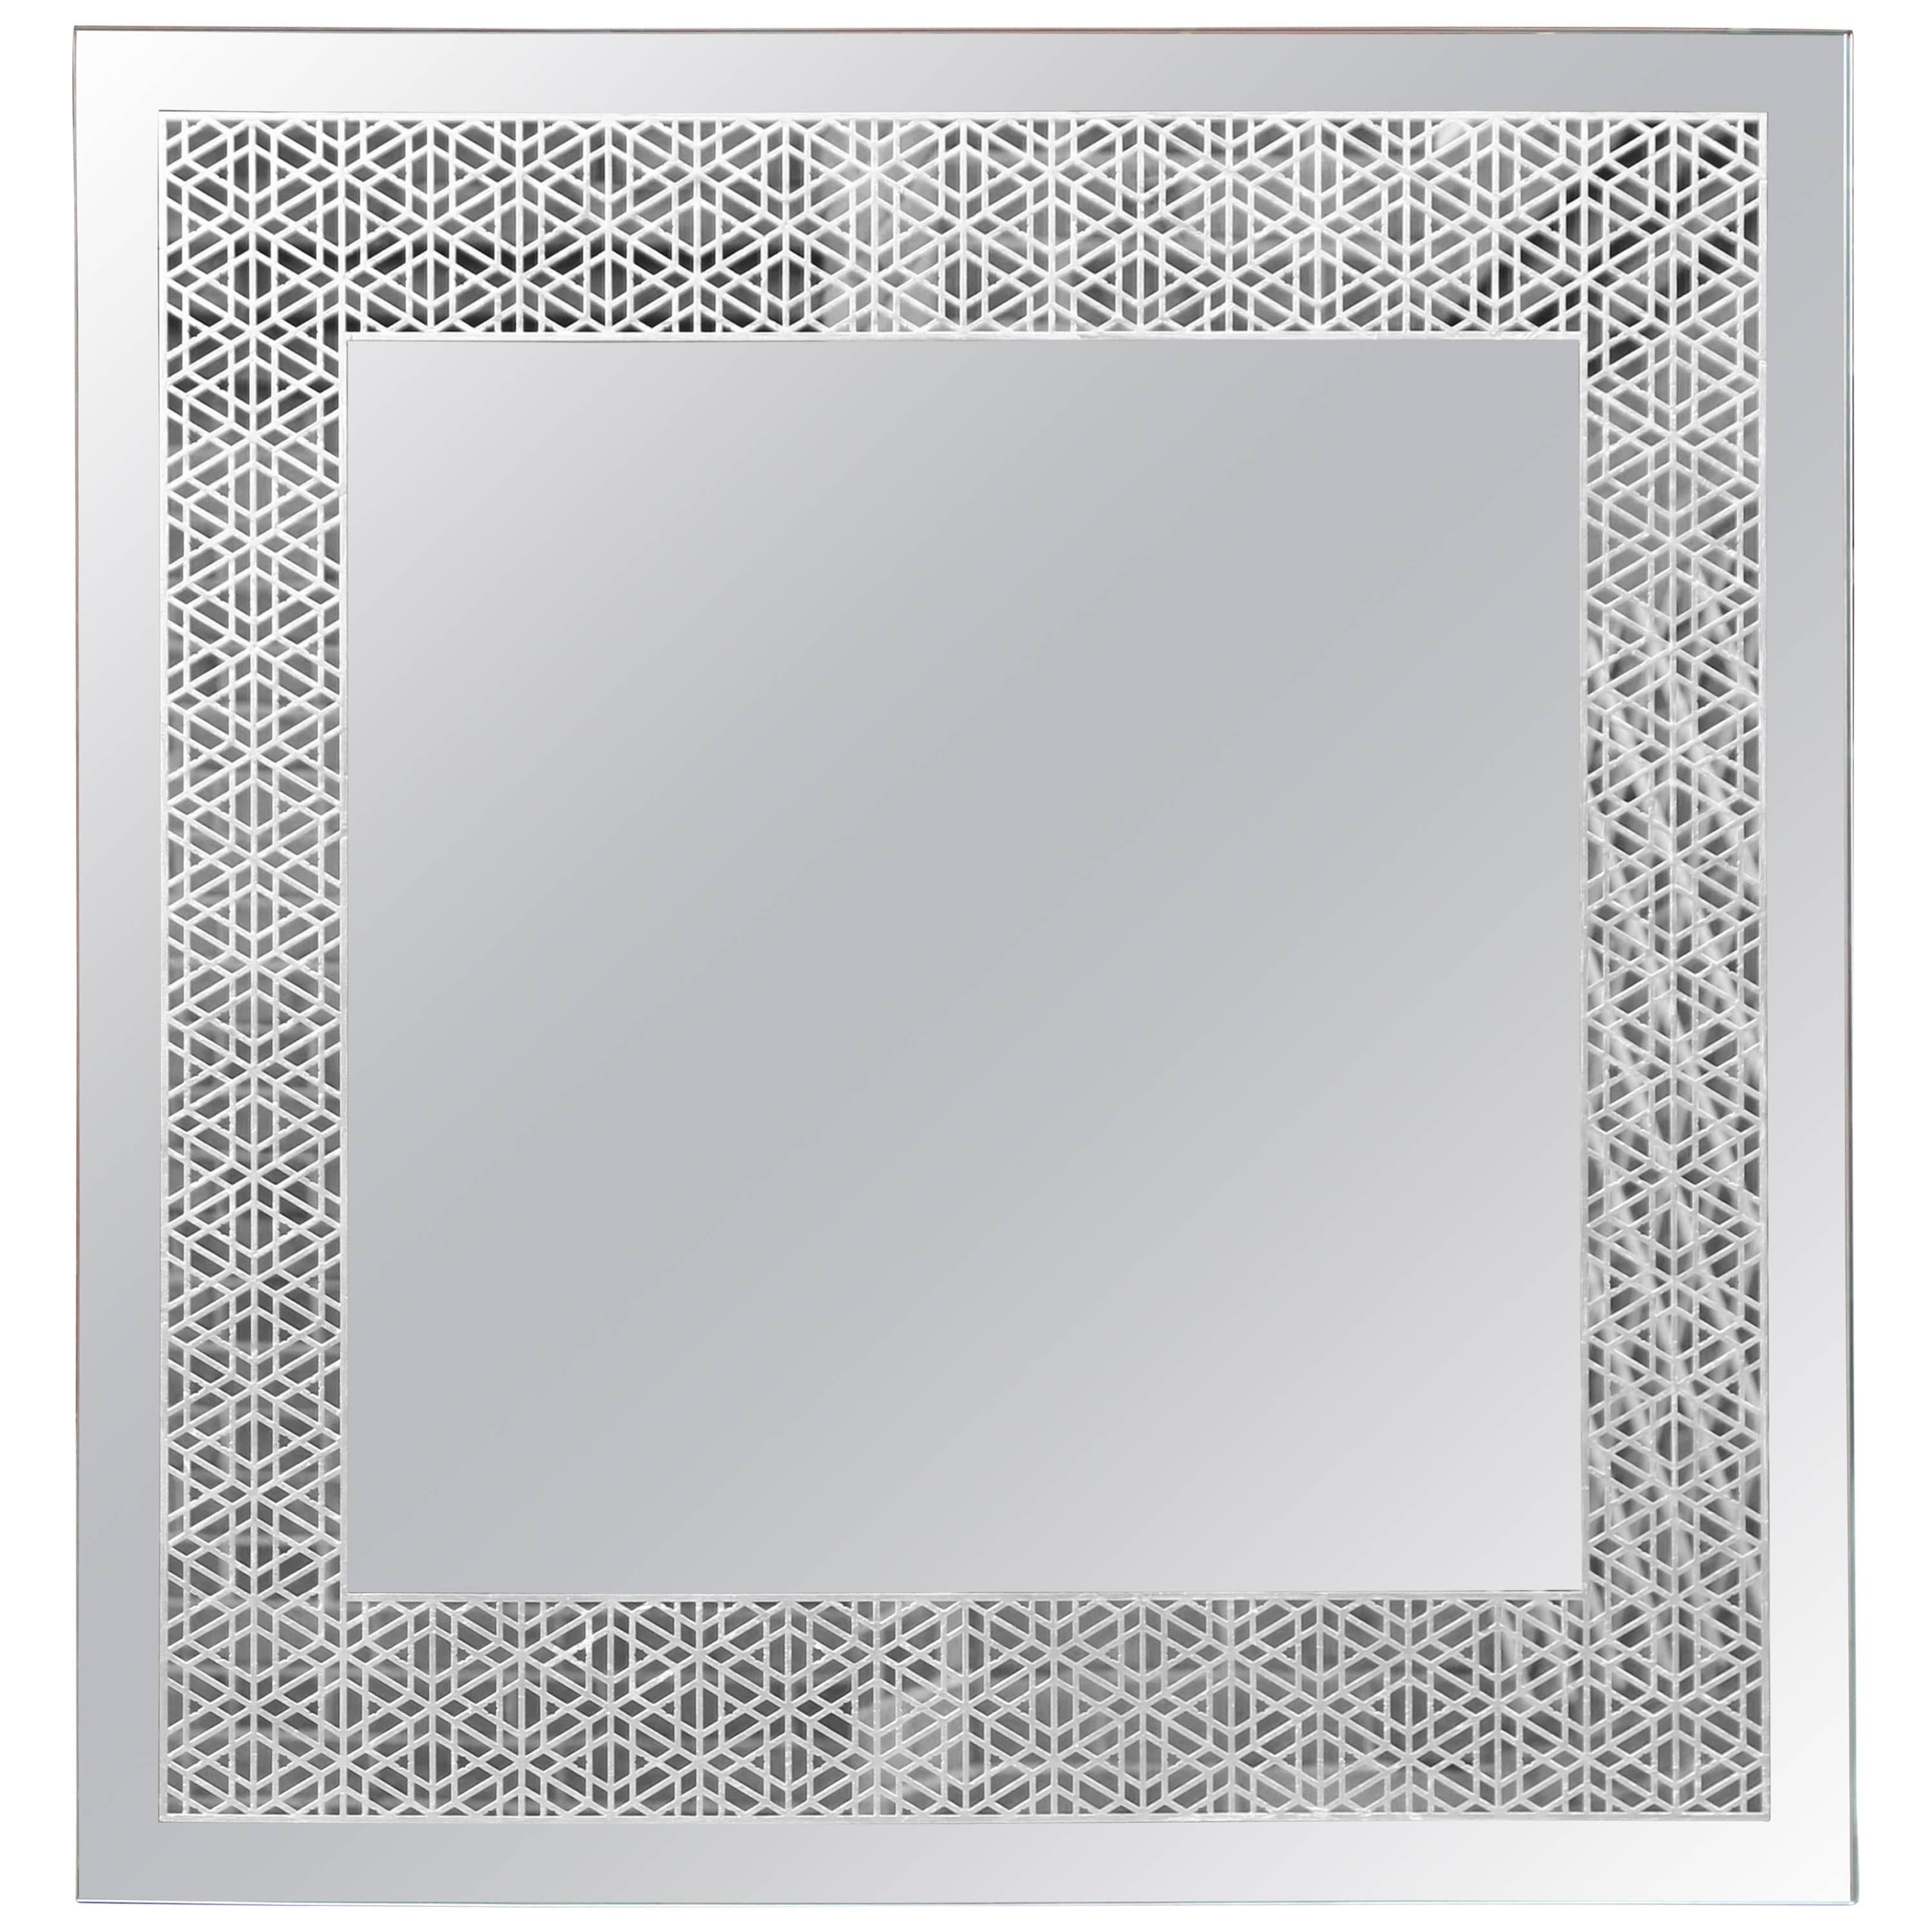 Unser Granada-Spiegel ziert ein raffiniertes, von spanisch-arabischen Mustern inspiriertes Muster, das fachmännisch auf die Rückseite geätzt und von Hand mit Blattsilber vergoldet wurde.

Silber wird gemeinhin mit Wohlstand und Prestige assoziiert,